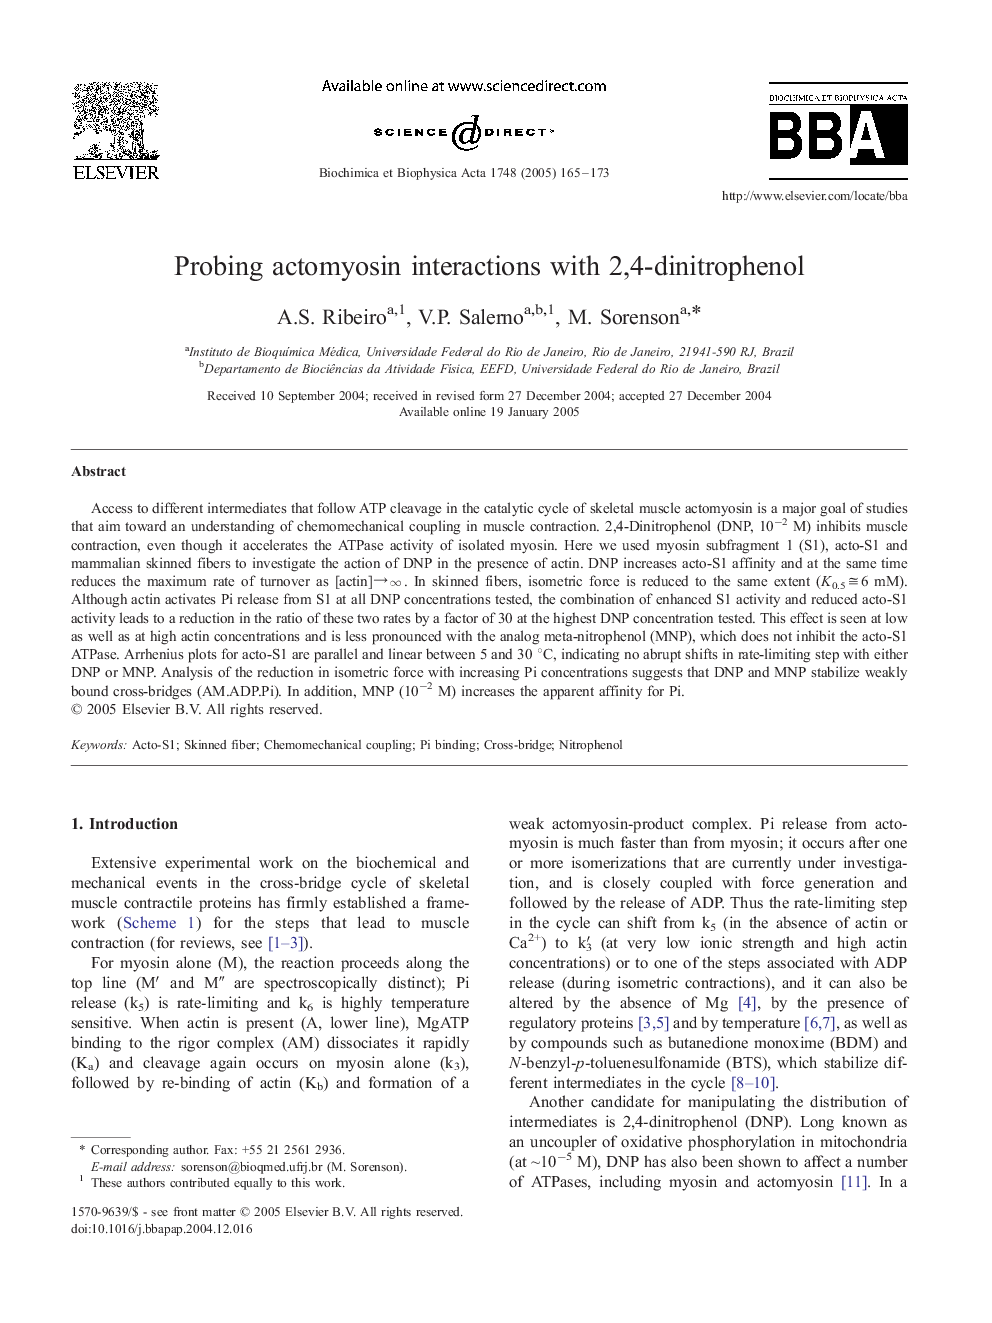 Probing actomyosin interactions with 2,4-dinitrophenol